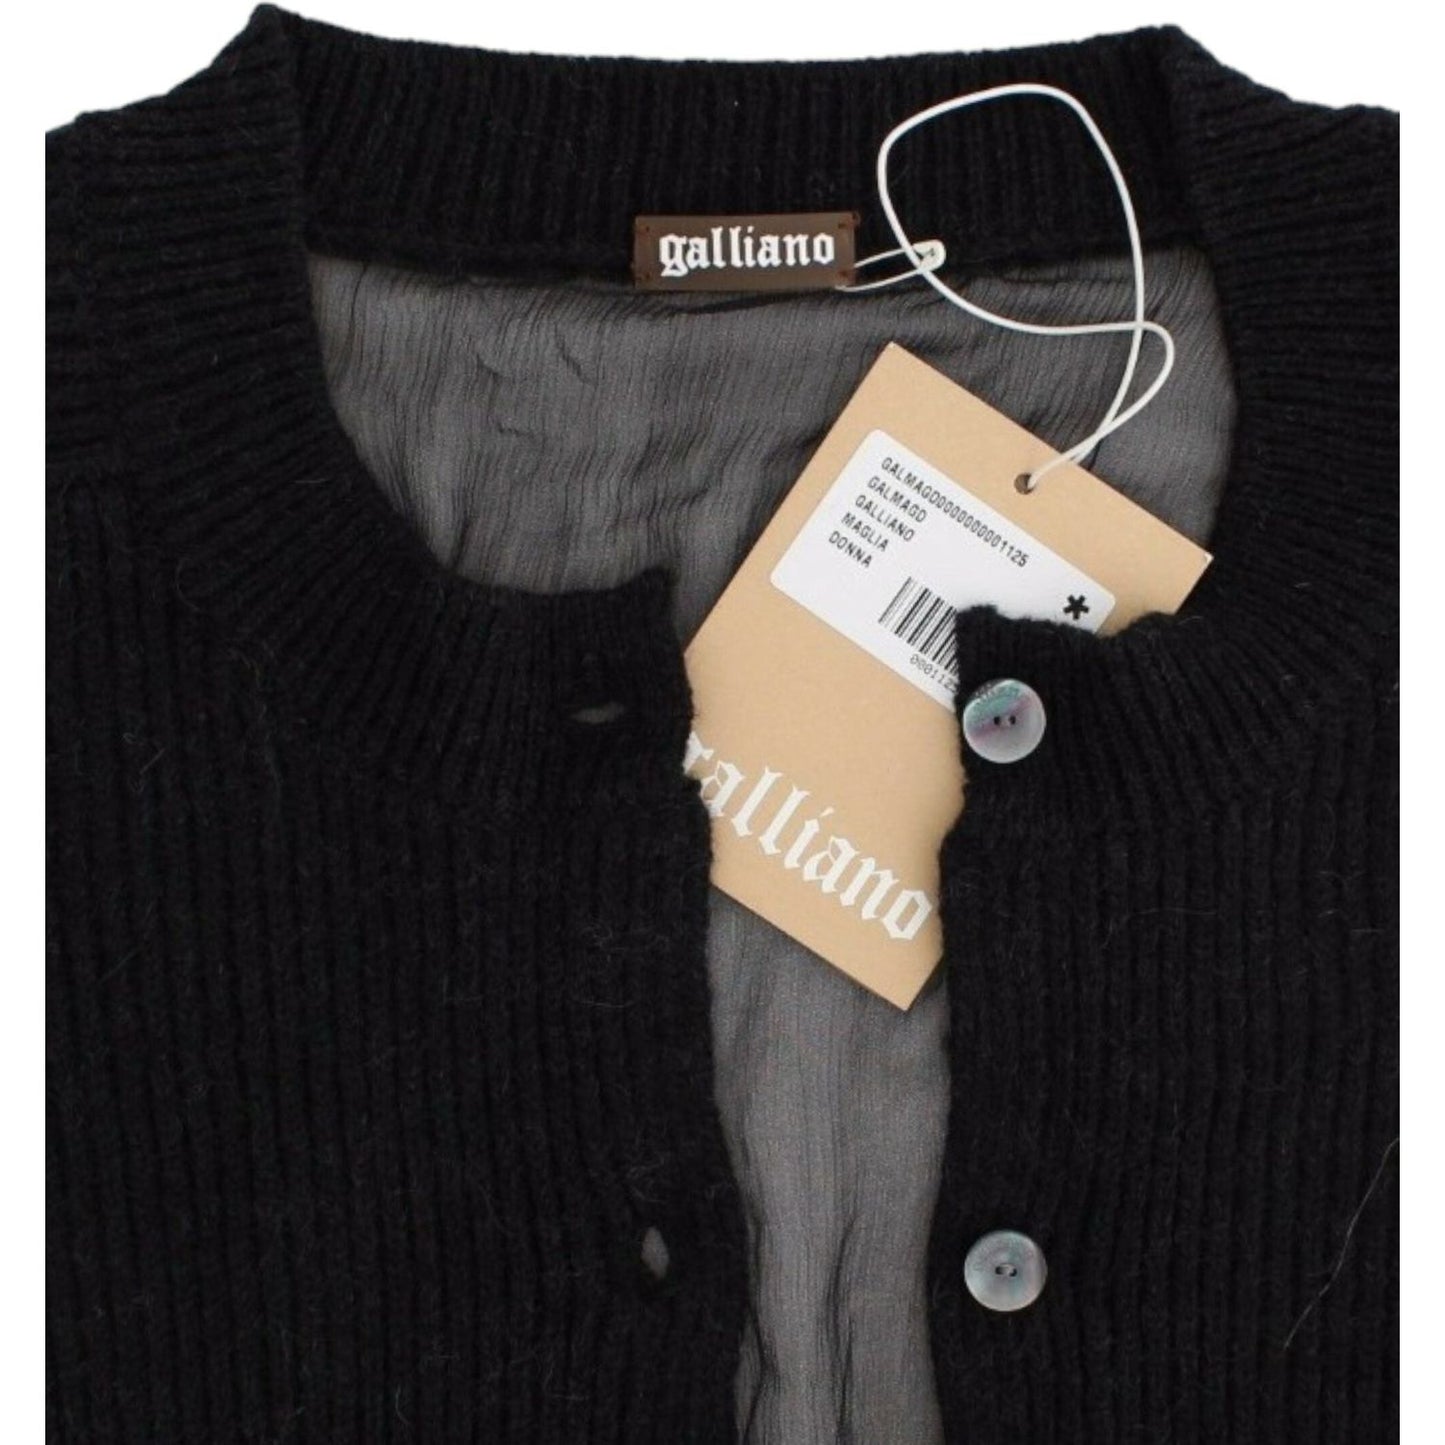 John Galliano Chic Transparent Back Woolen Cardigan black-wool-cardigan 5815-black-wool-cardigan-2-6-scaled-2283d2a9-dc8.jpg